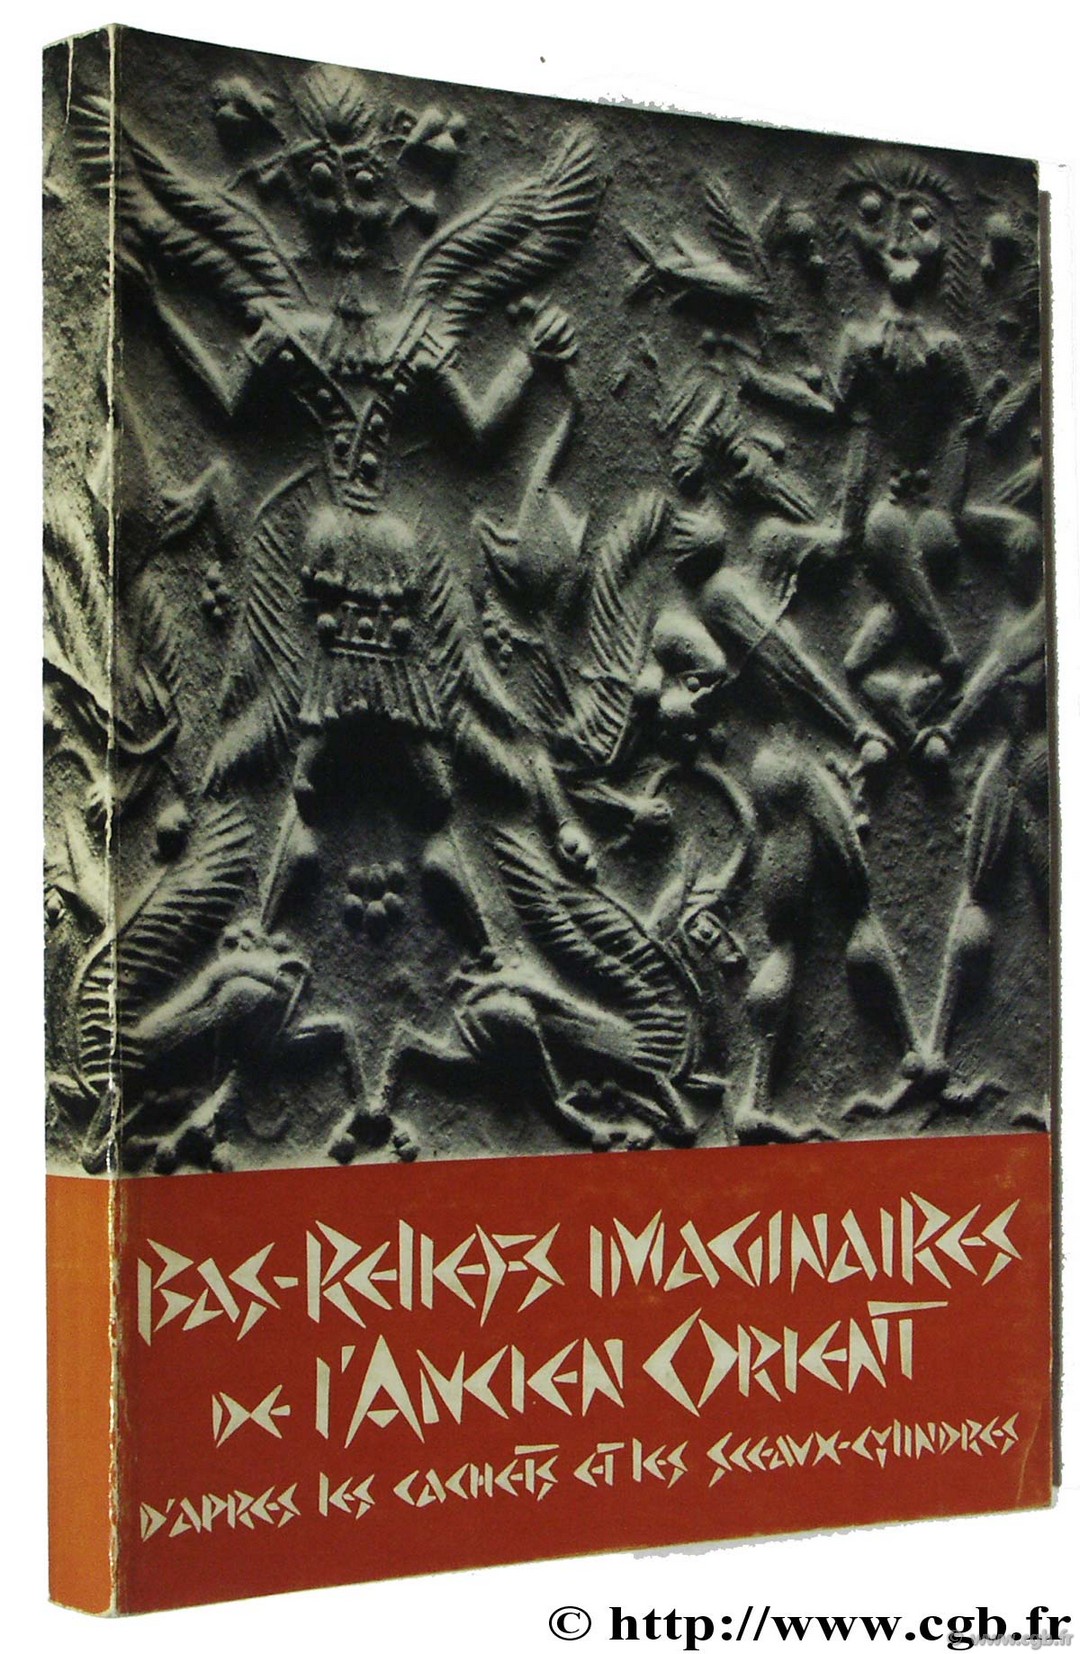 Bas-reliefs imaginaires de l Ancient Orient, Hôtel de la Monnaie, juin-octobre 1973 Exposition / Concours